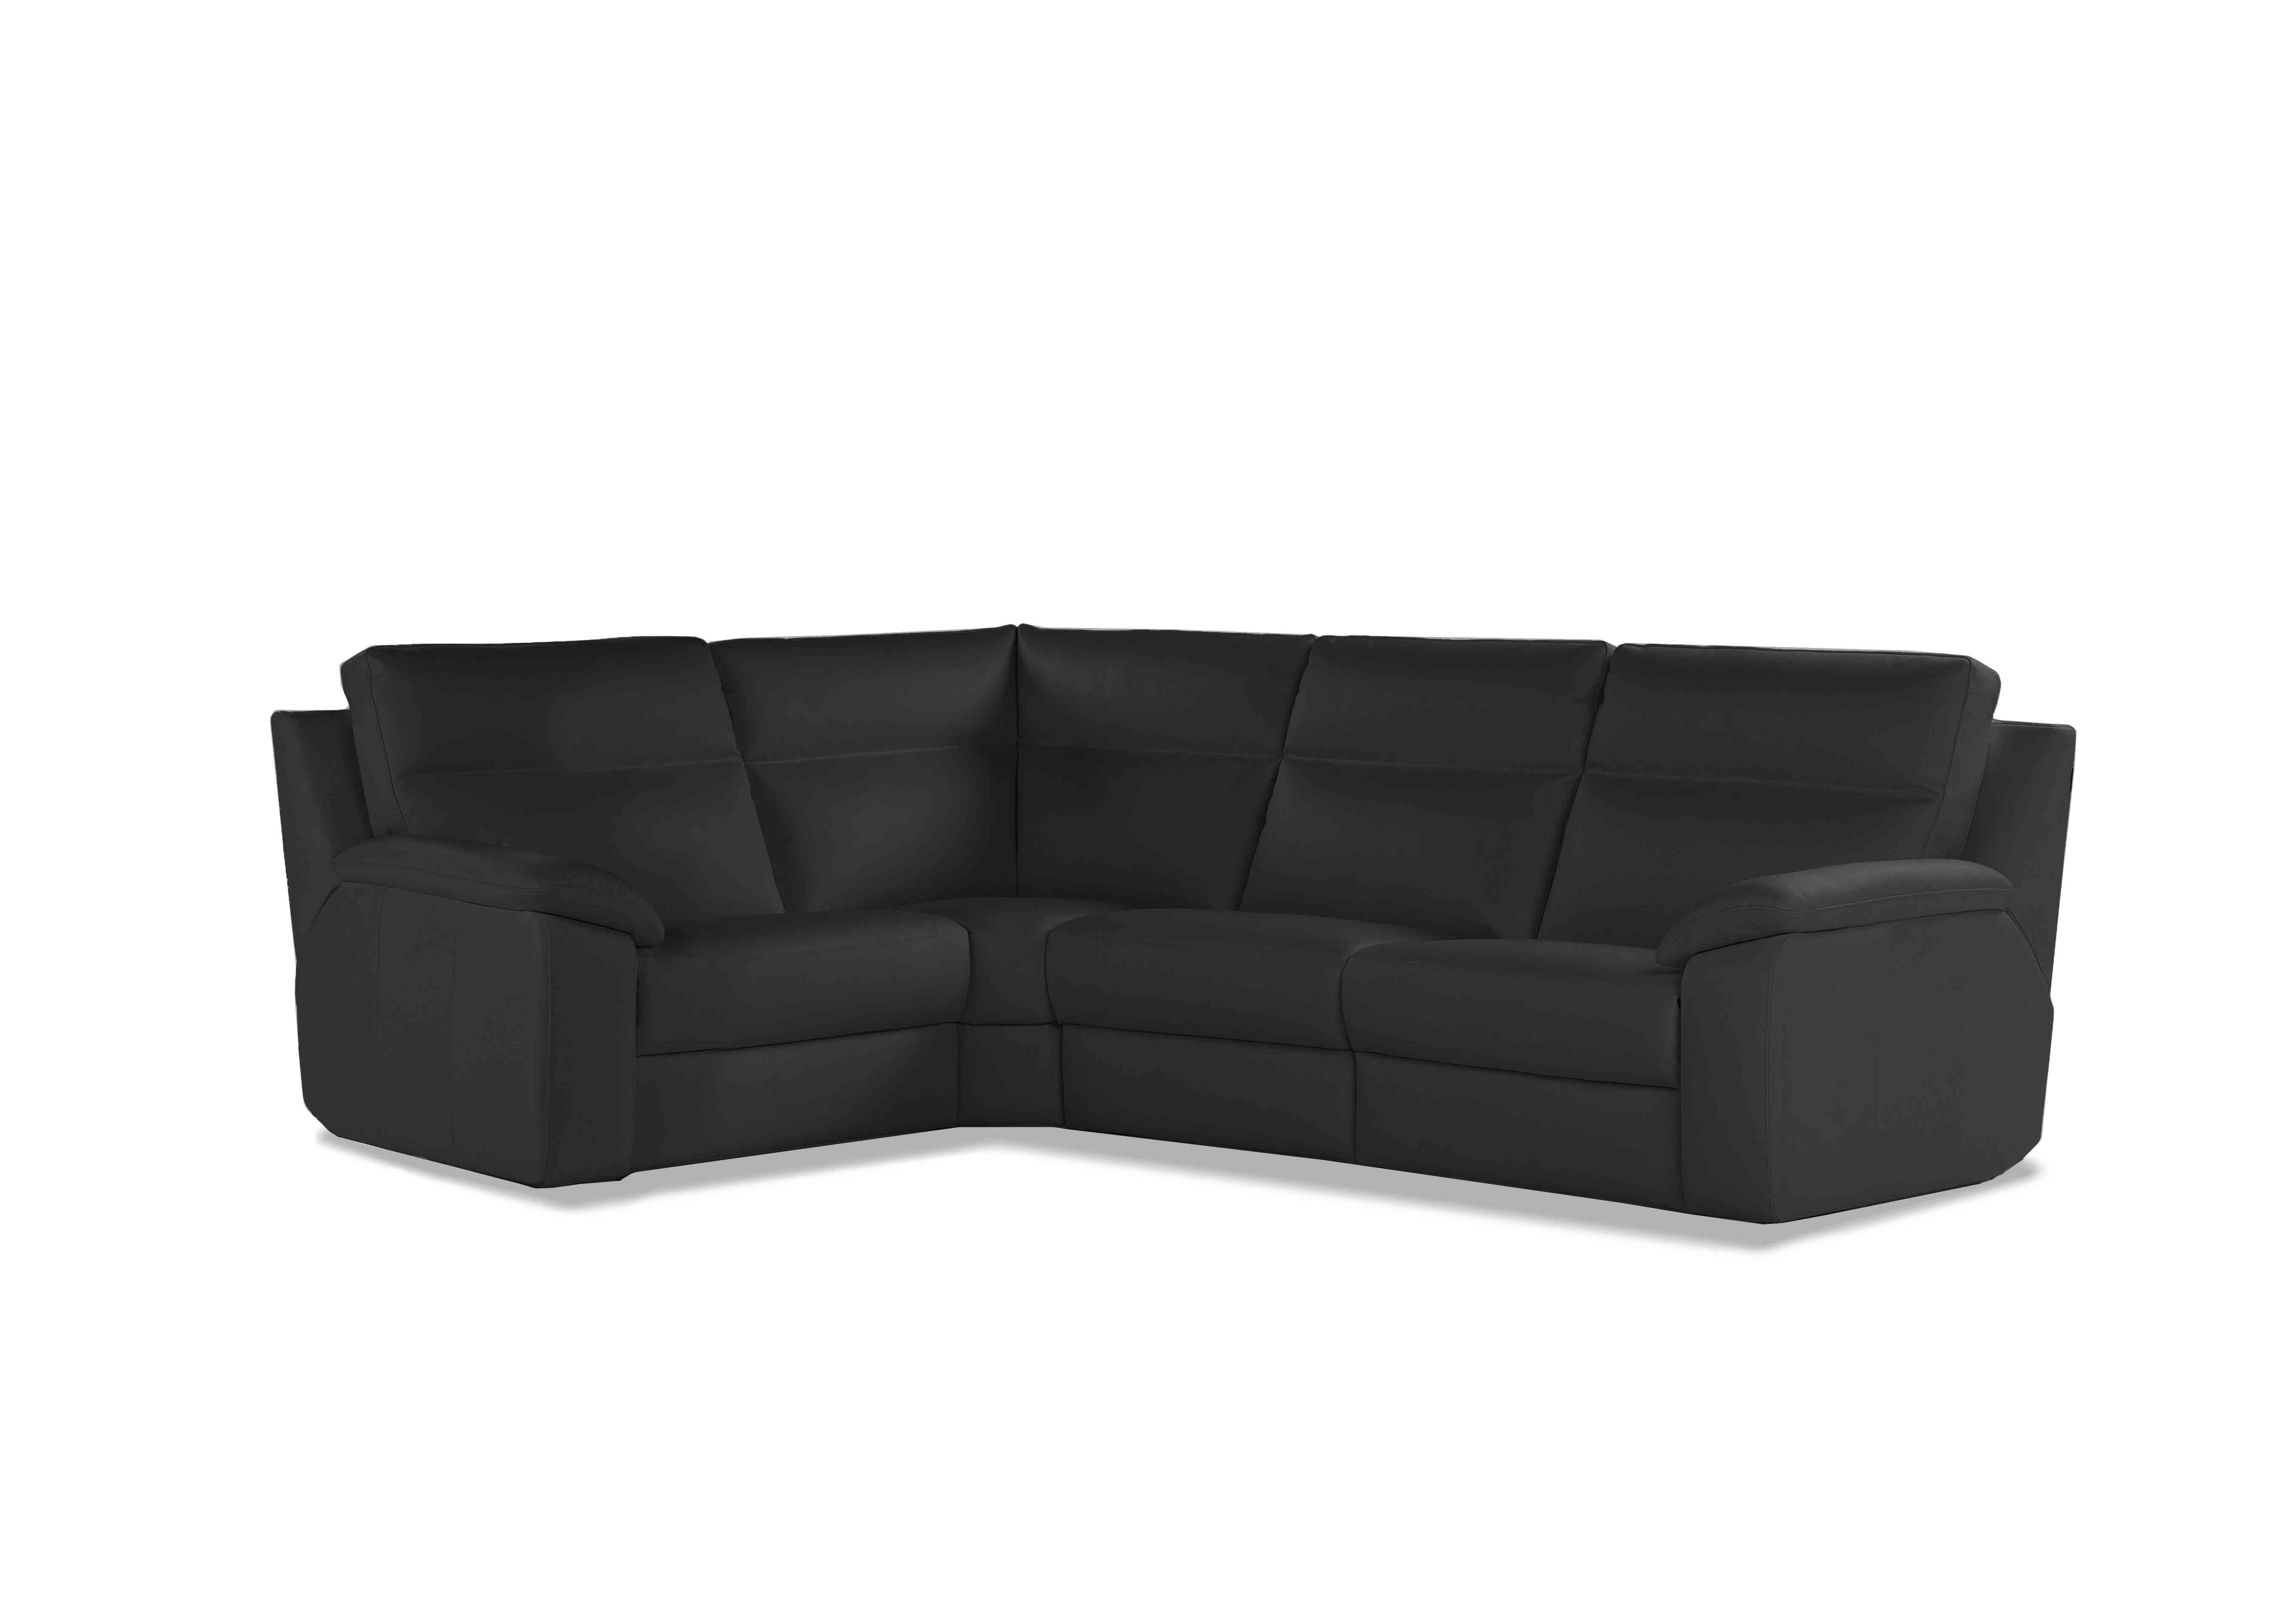 Pepino Small Leather Corner Sofa in 71 Torello Nero on Furniture Village